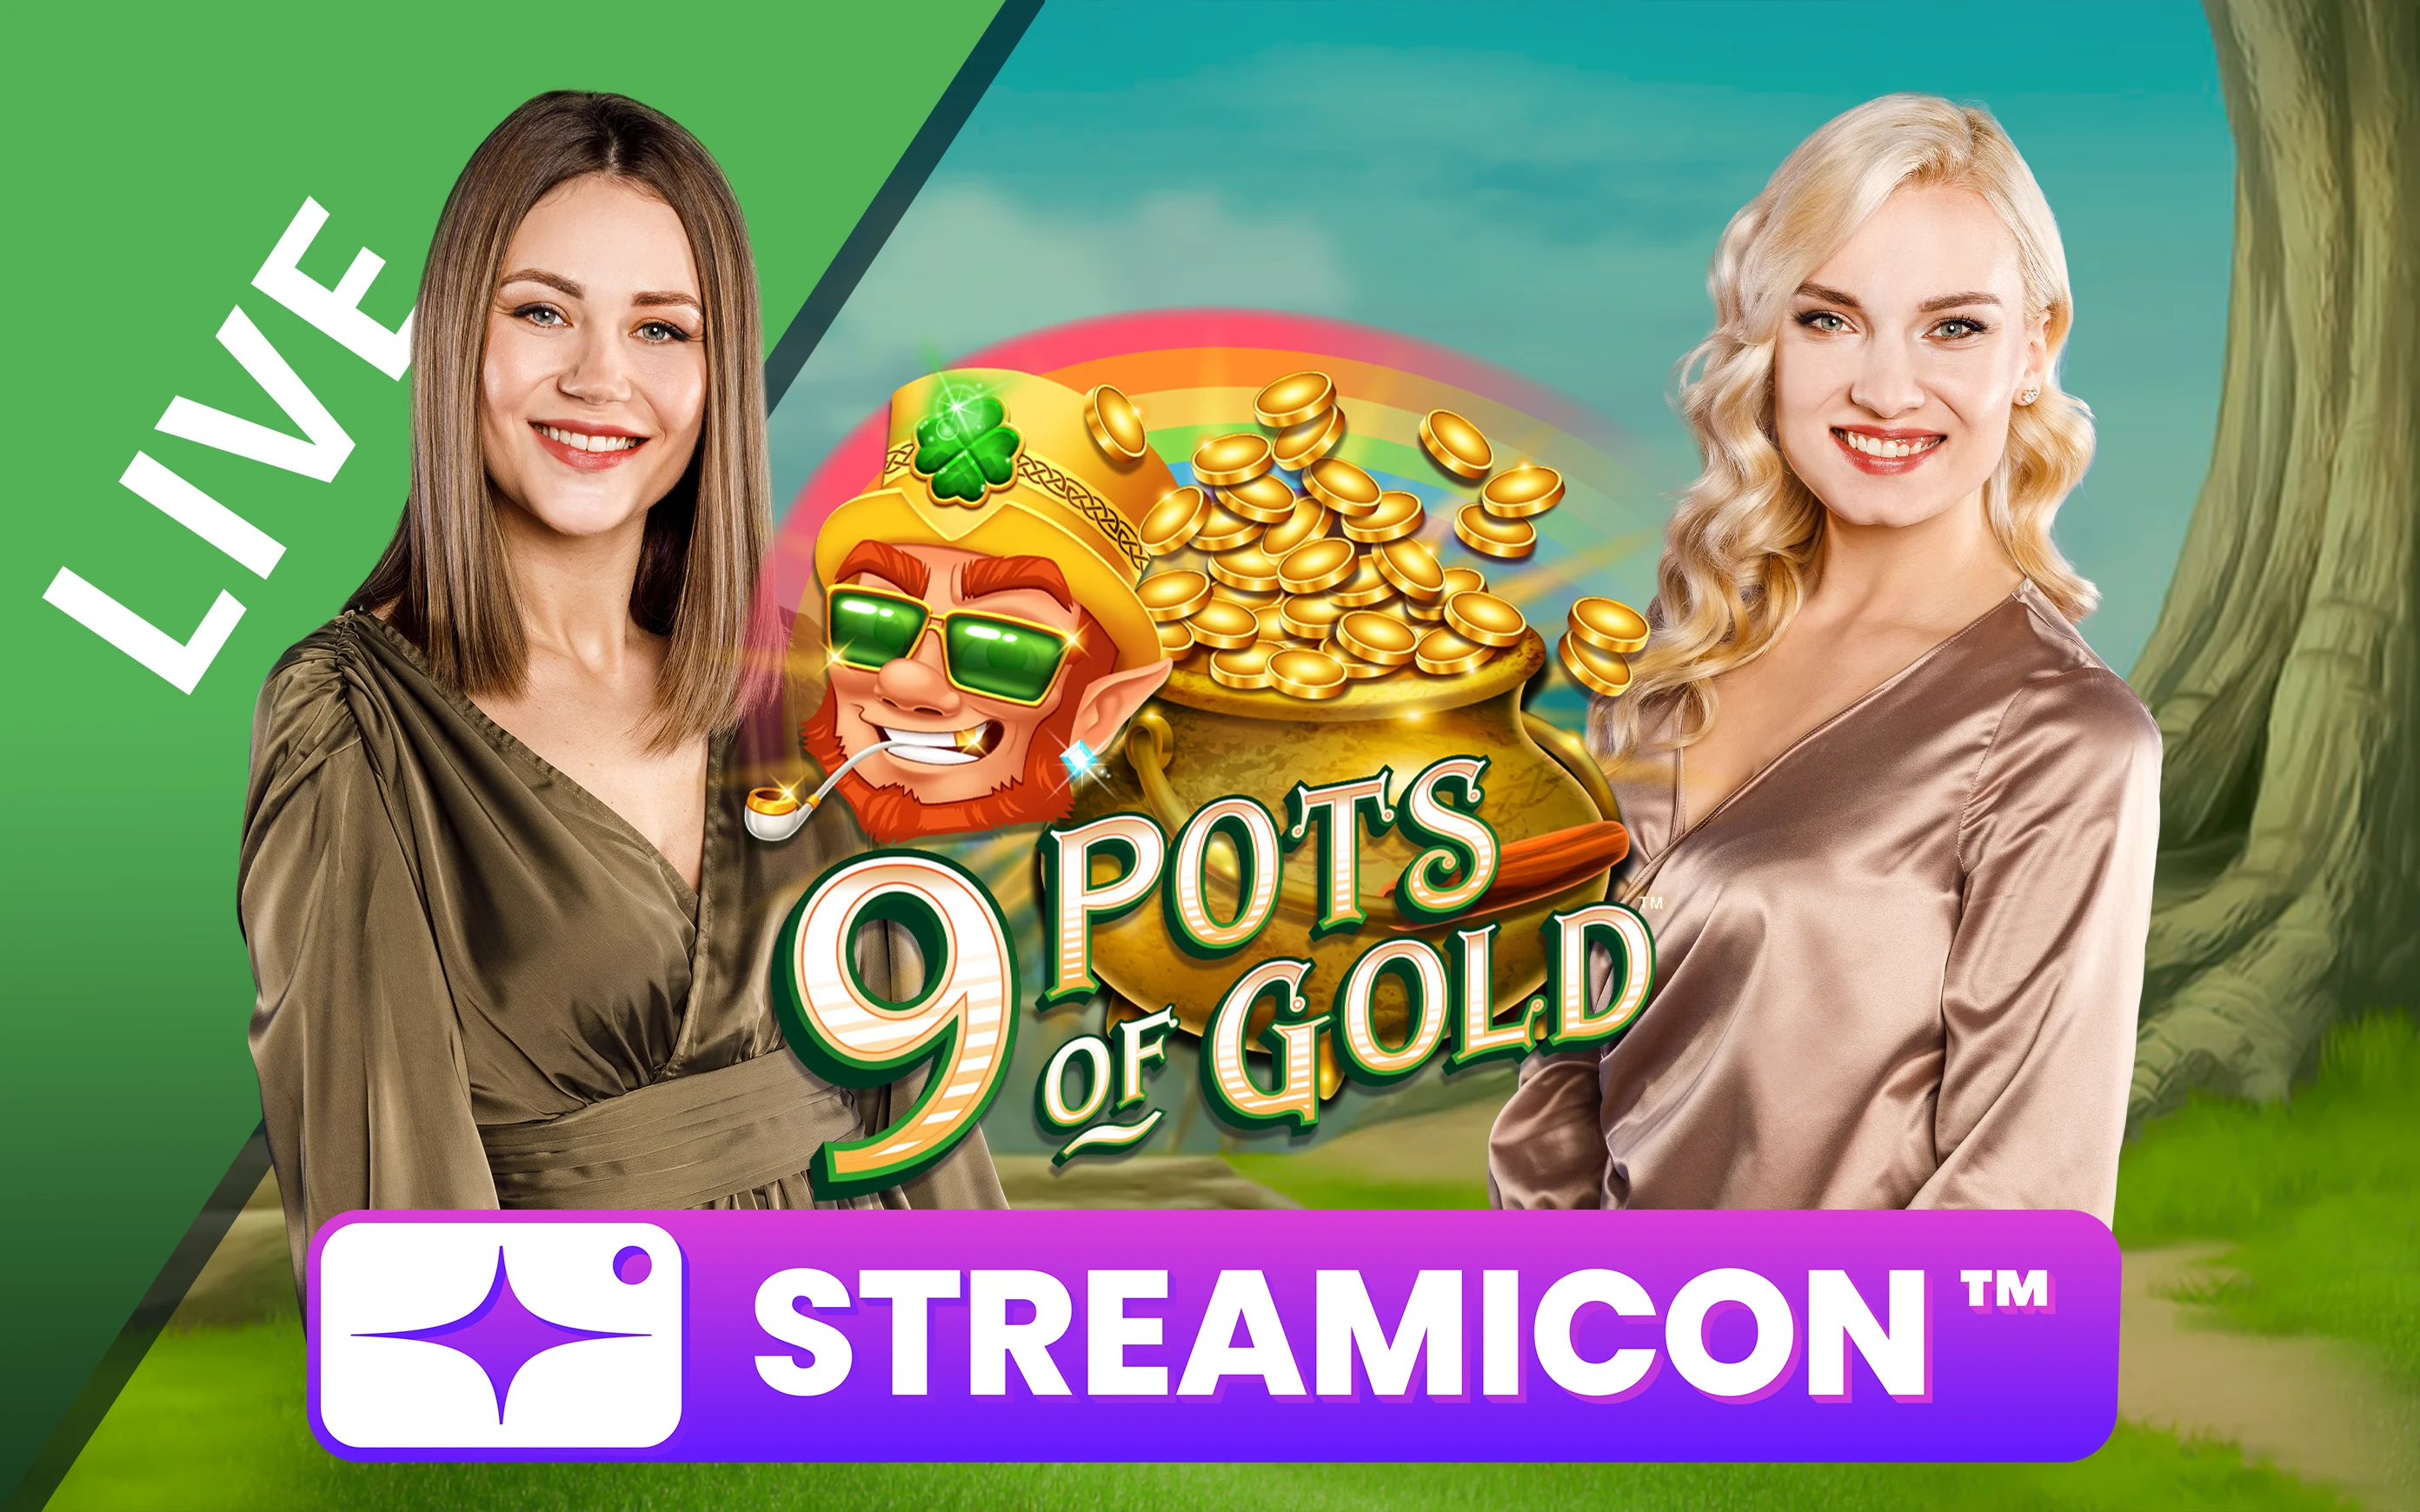 Παίξτε 9 Pots of Gold™ Streamicon™ στο online καζίνο Starcasino.be